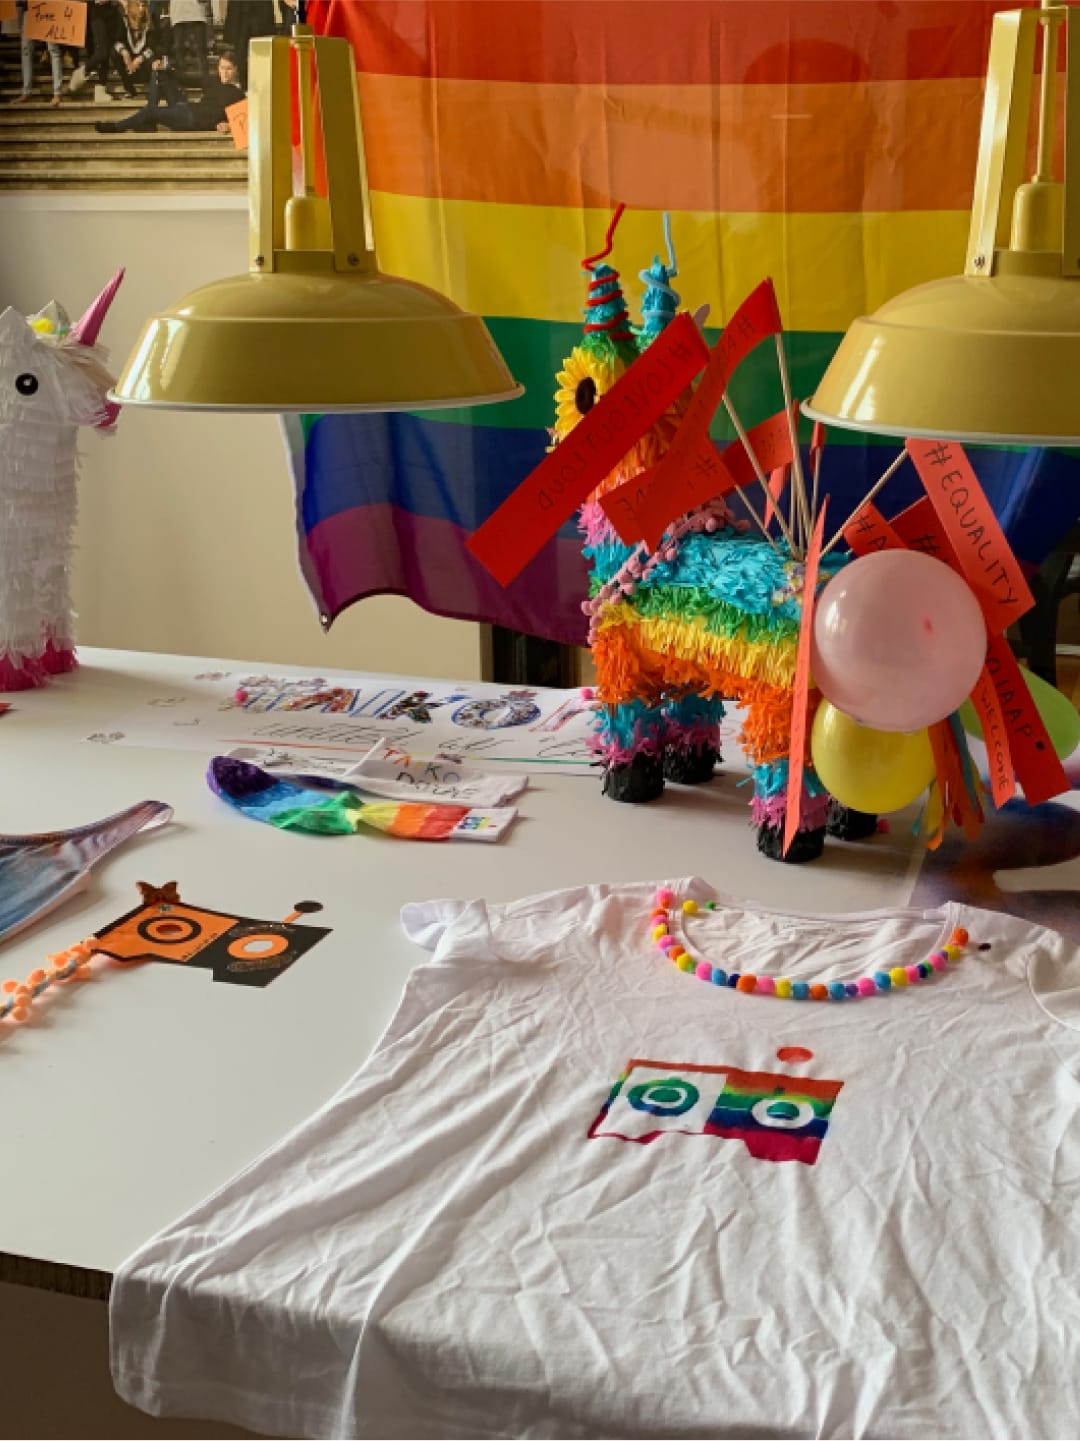 Ein Tisch mit einer LGBTQ+ Regenbogenflagge, Luftballons, einer bunten Pinata und bunten angemalten Shirt.